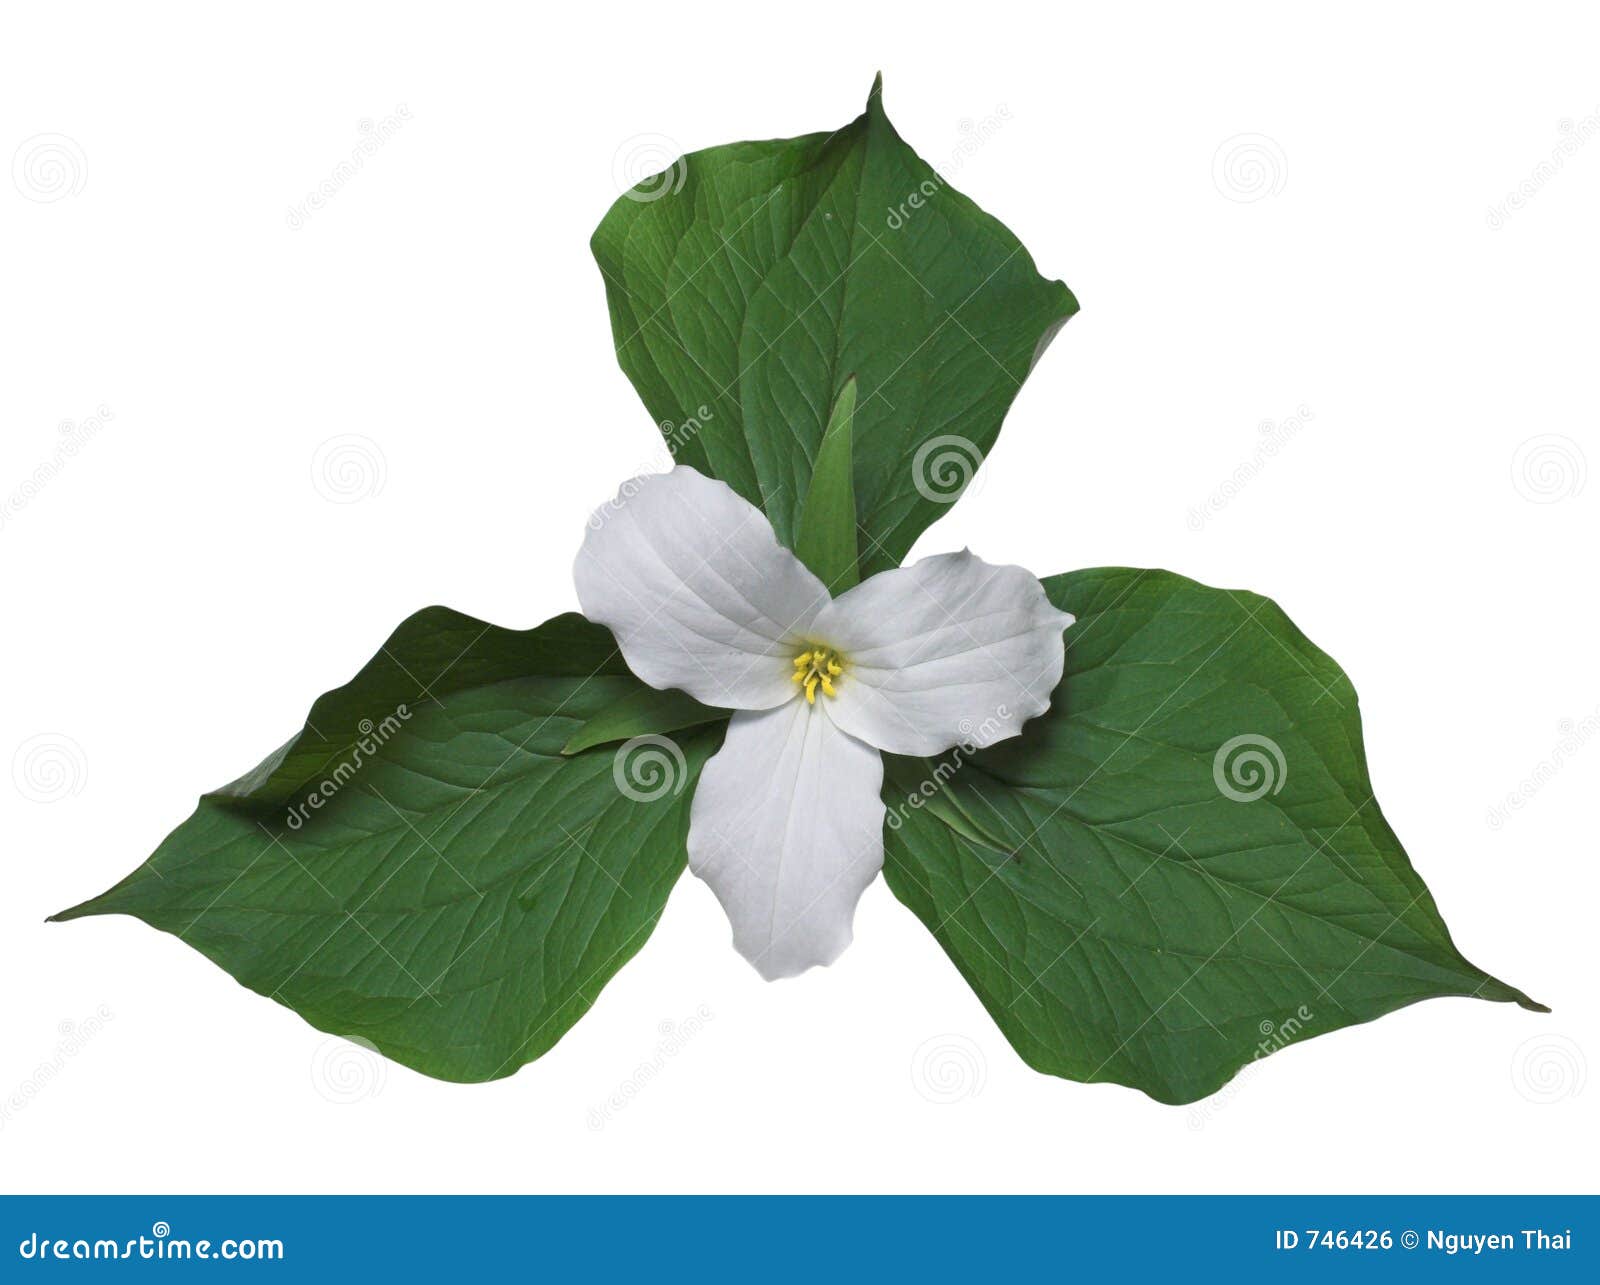 white trillium with leaves